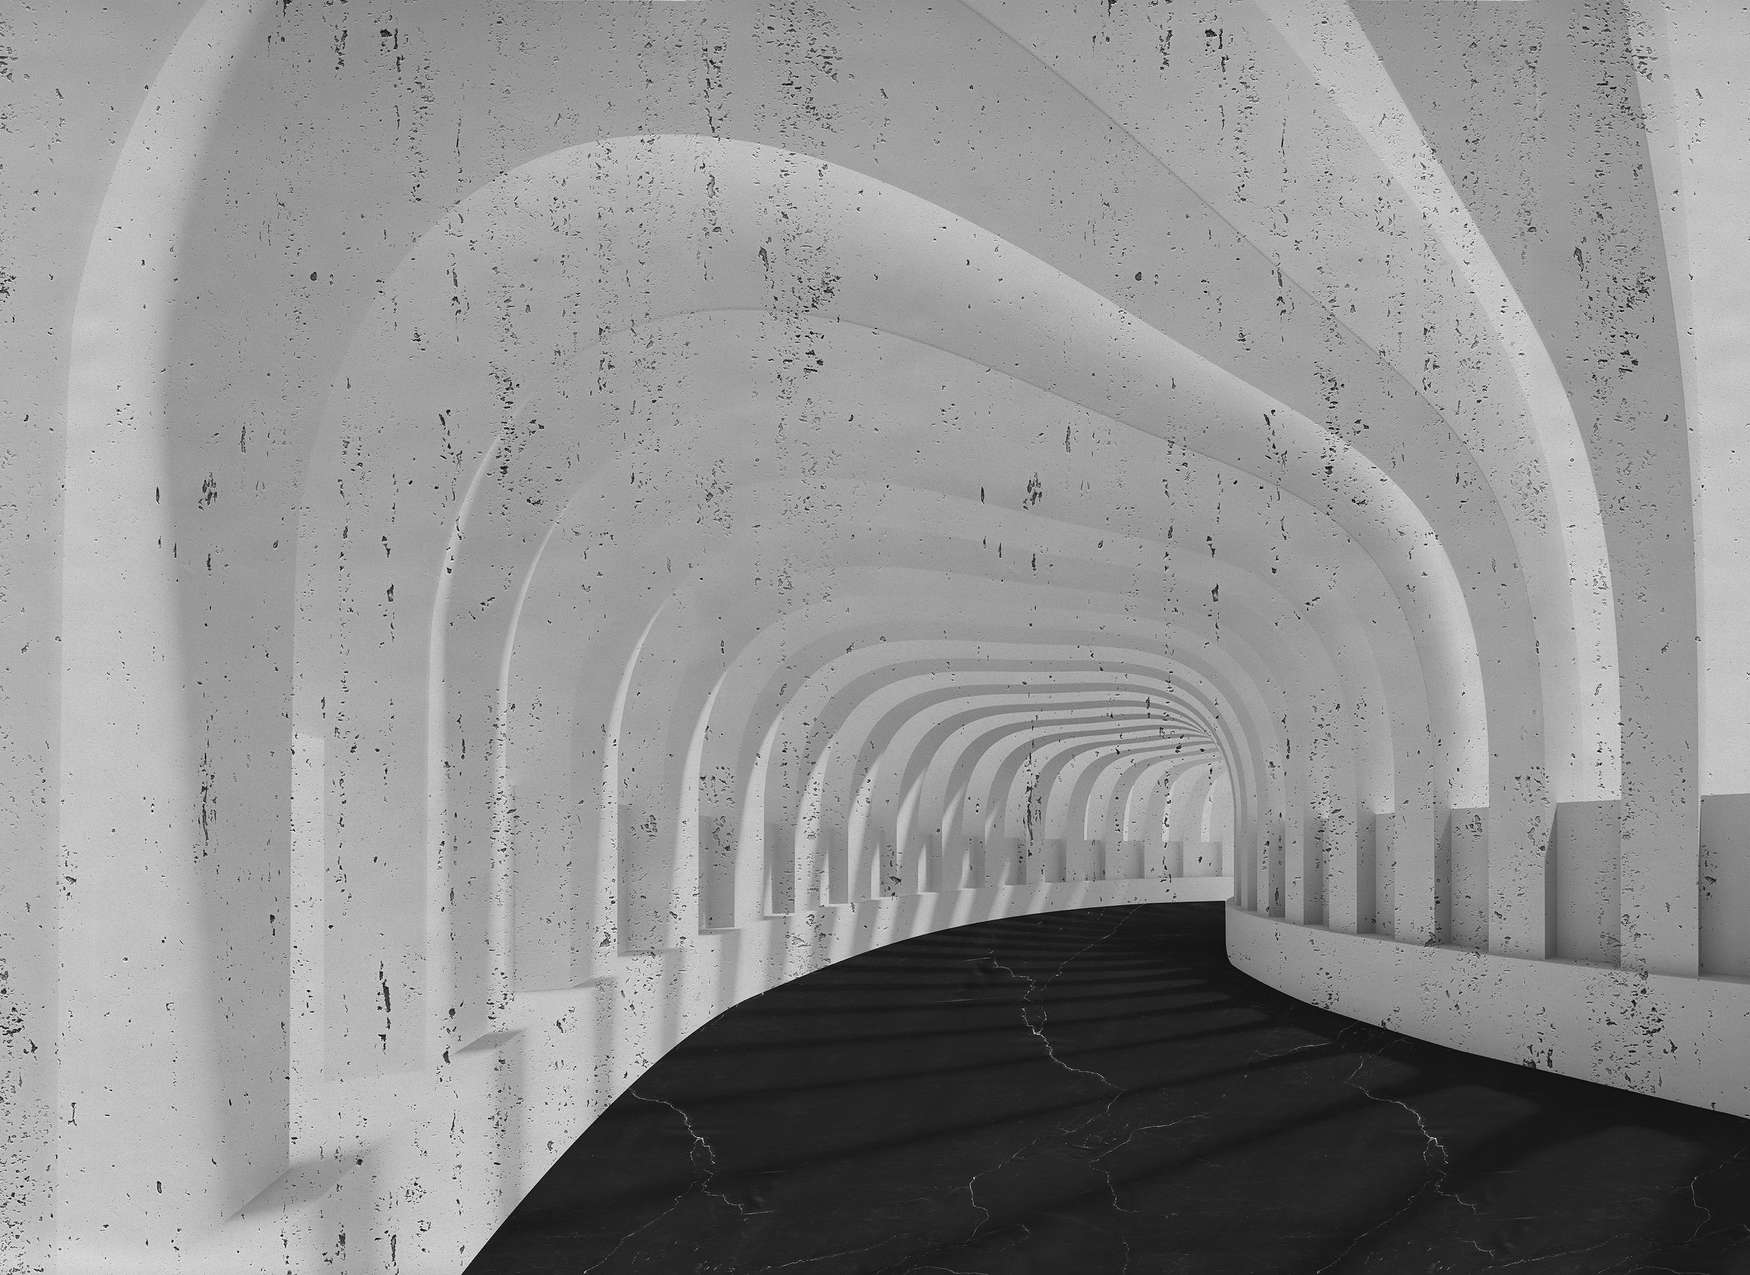             Papier peint 3D tunnel en béton avec des arcs - gris, noir
        